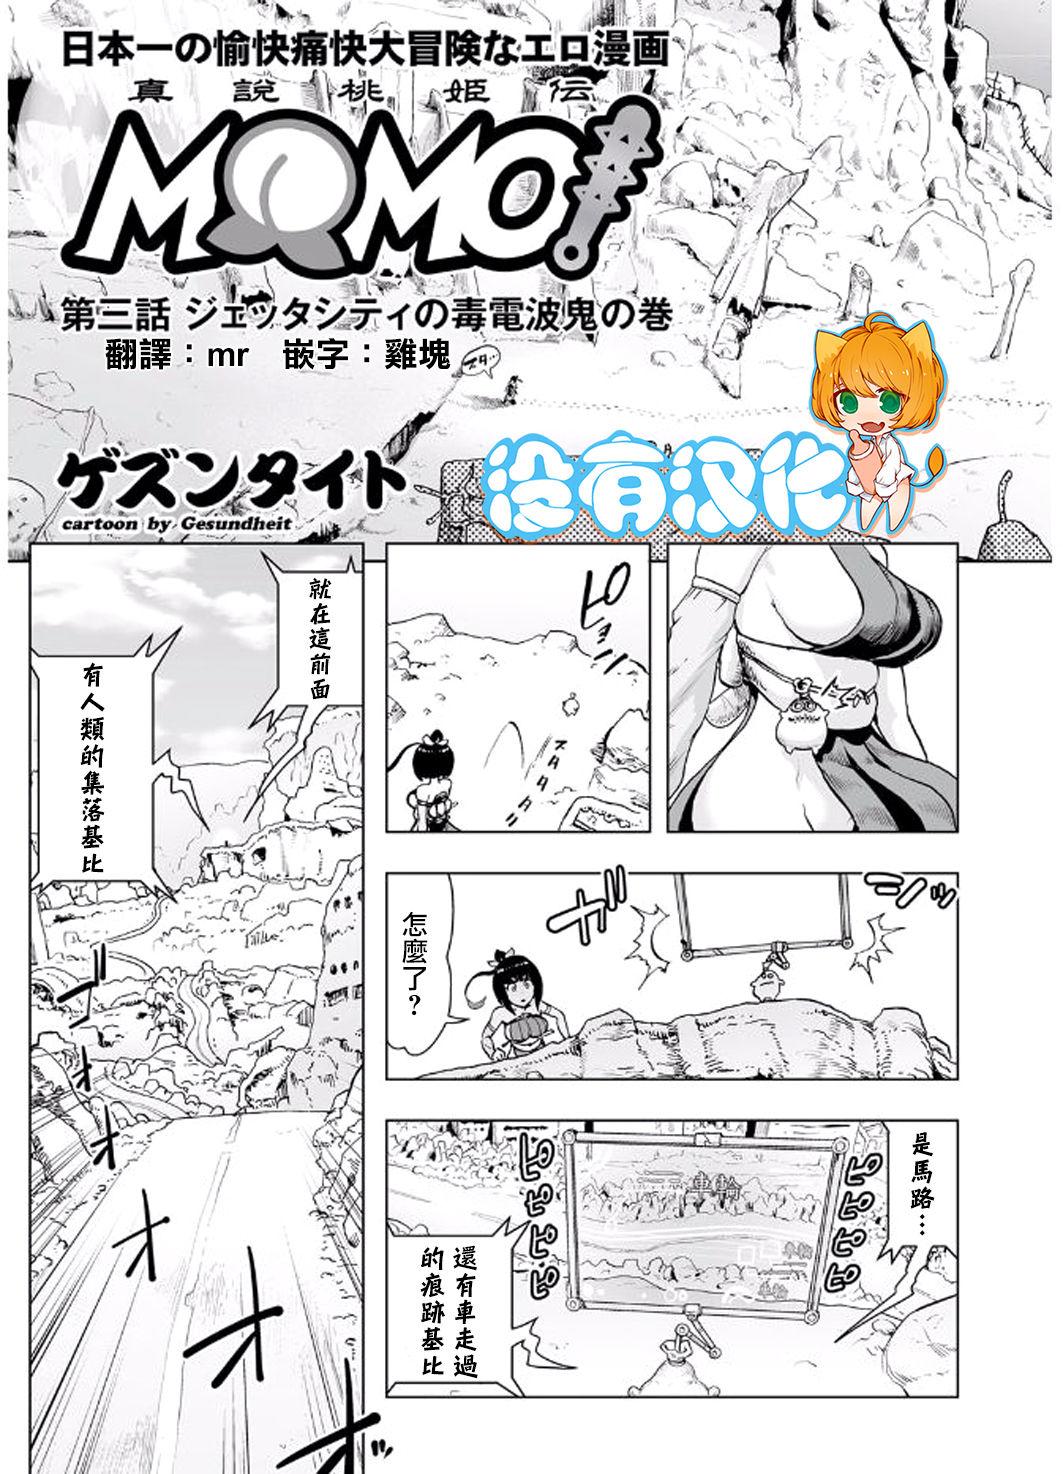 Creamy MOMO! Daisanwa Jetta City no Dokudenpa Oni no Maki Lolicon - Page 3